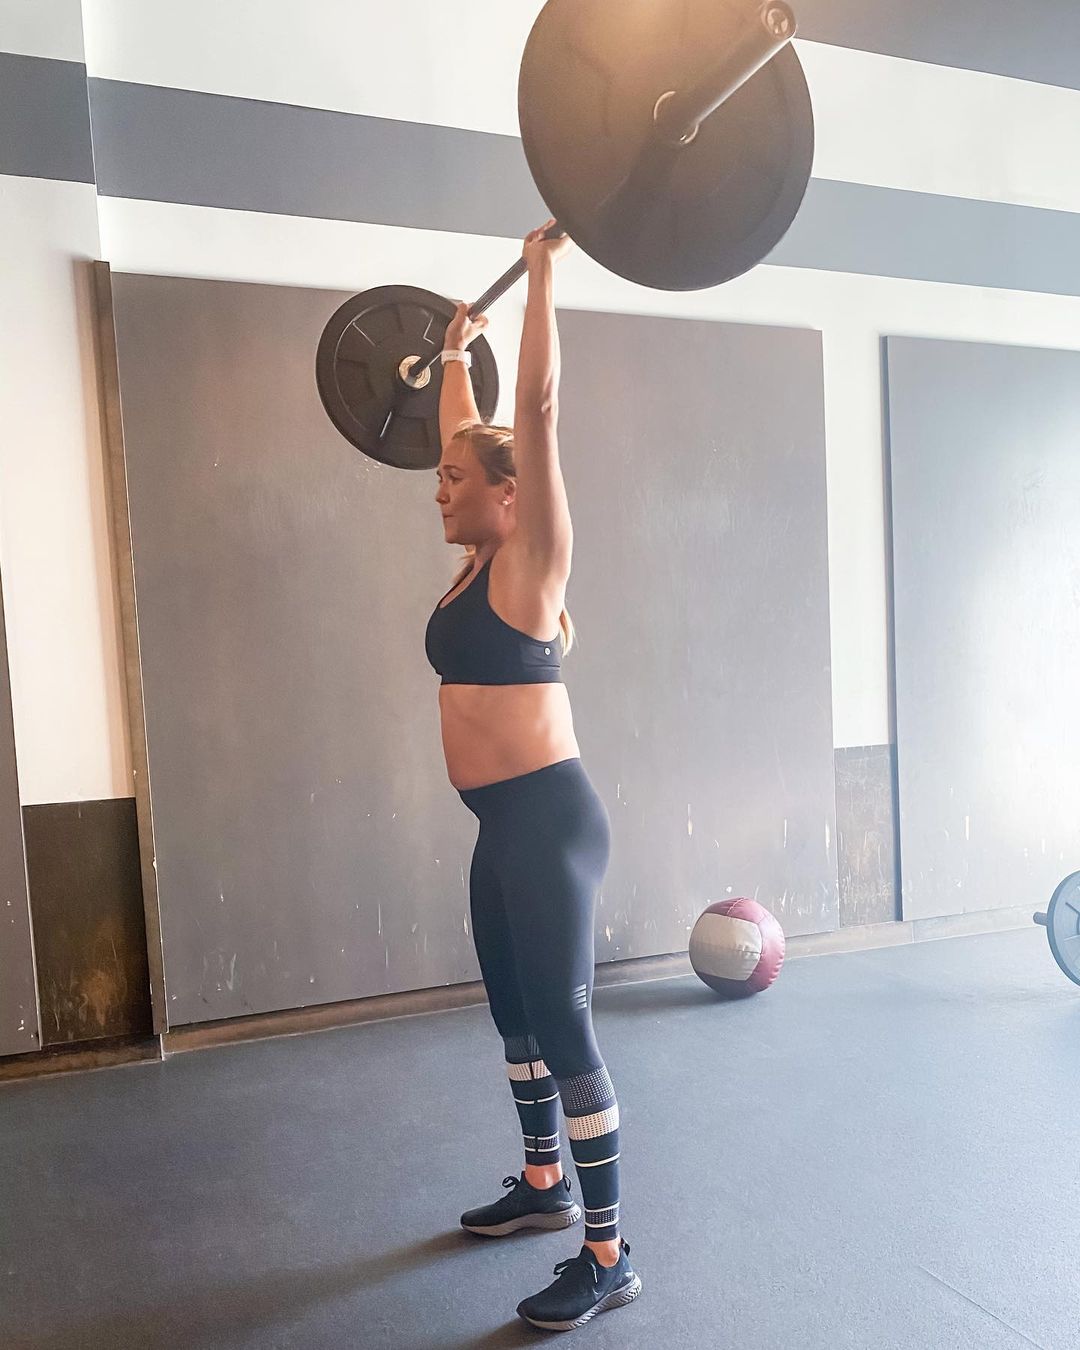 Спорт во время беременности: 5 фитнес-инструкторов в положении